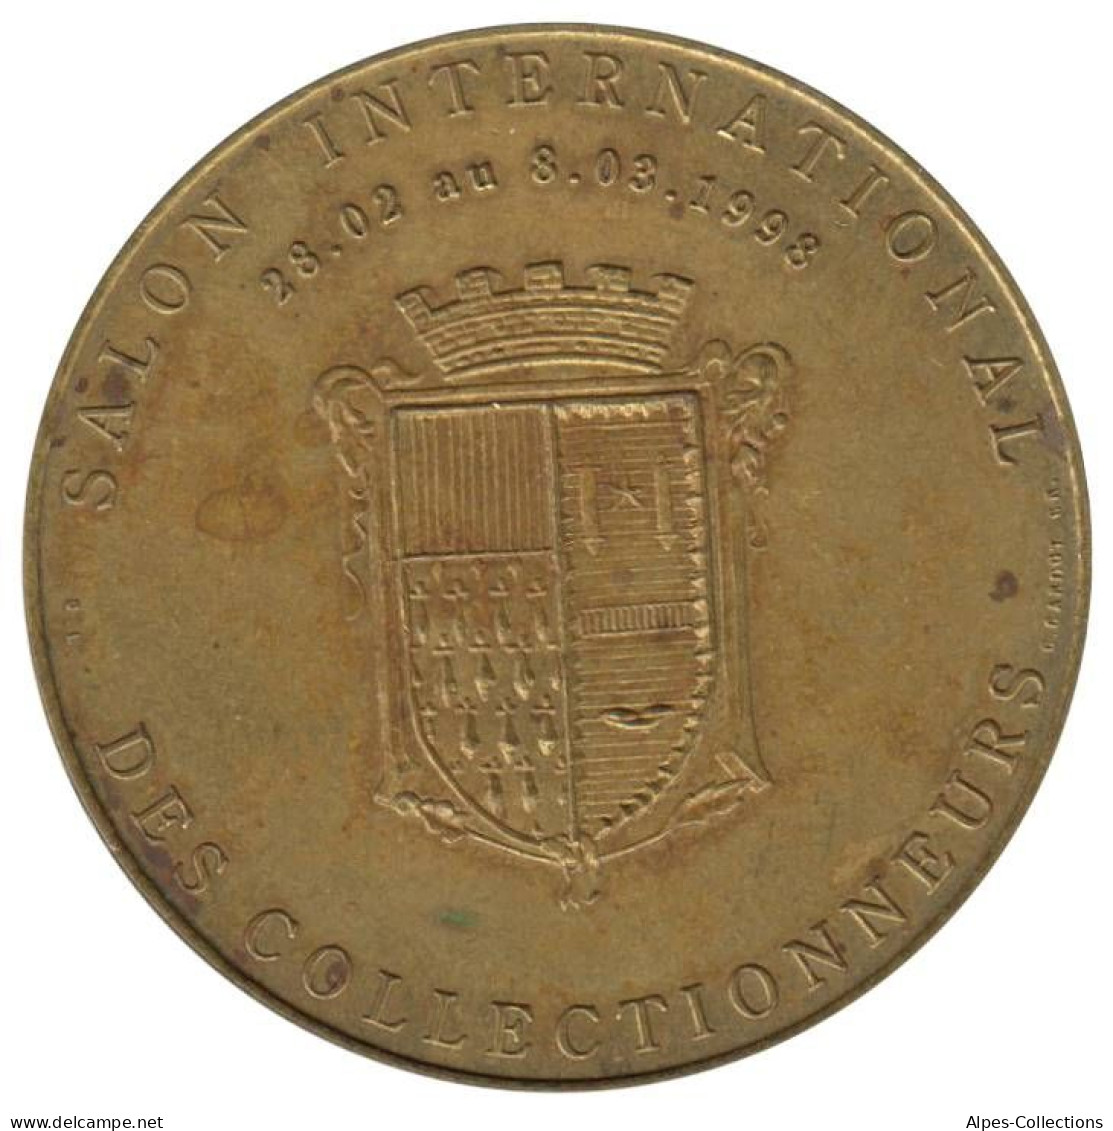 ROUBAIX - EU0010.1 - 1 EURO DES VILLES - Réf: NR - 1998 - Euros Des Villes